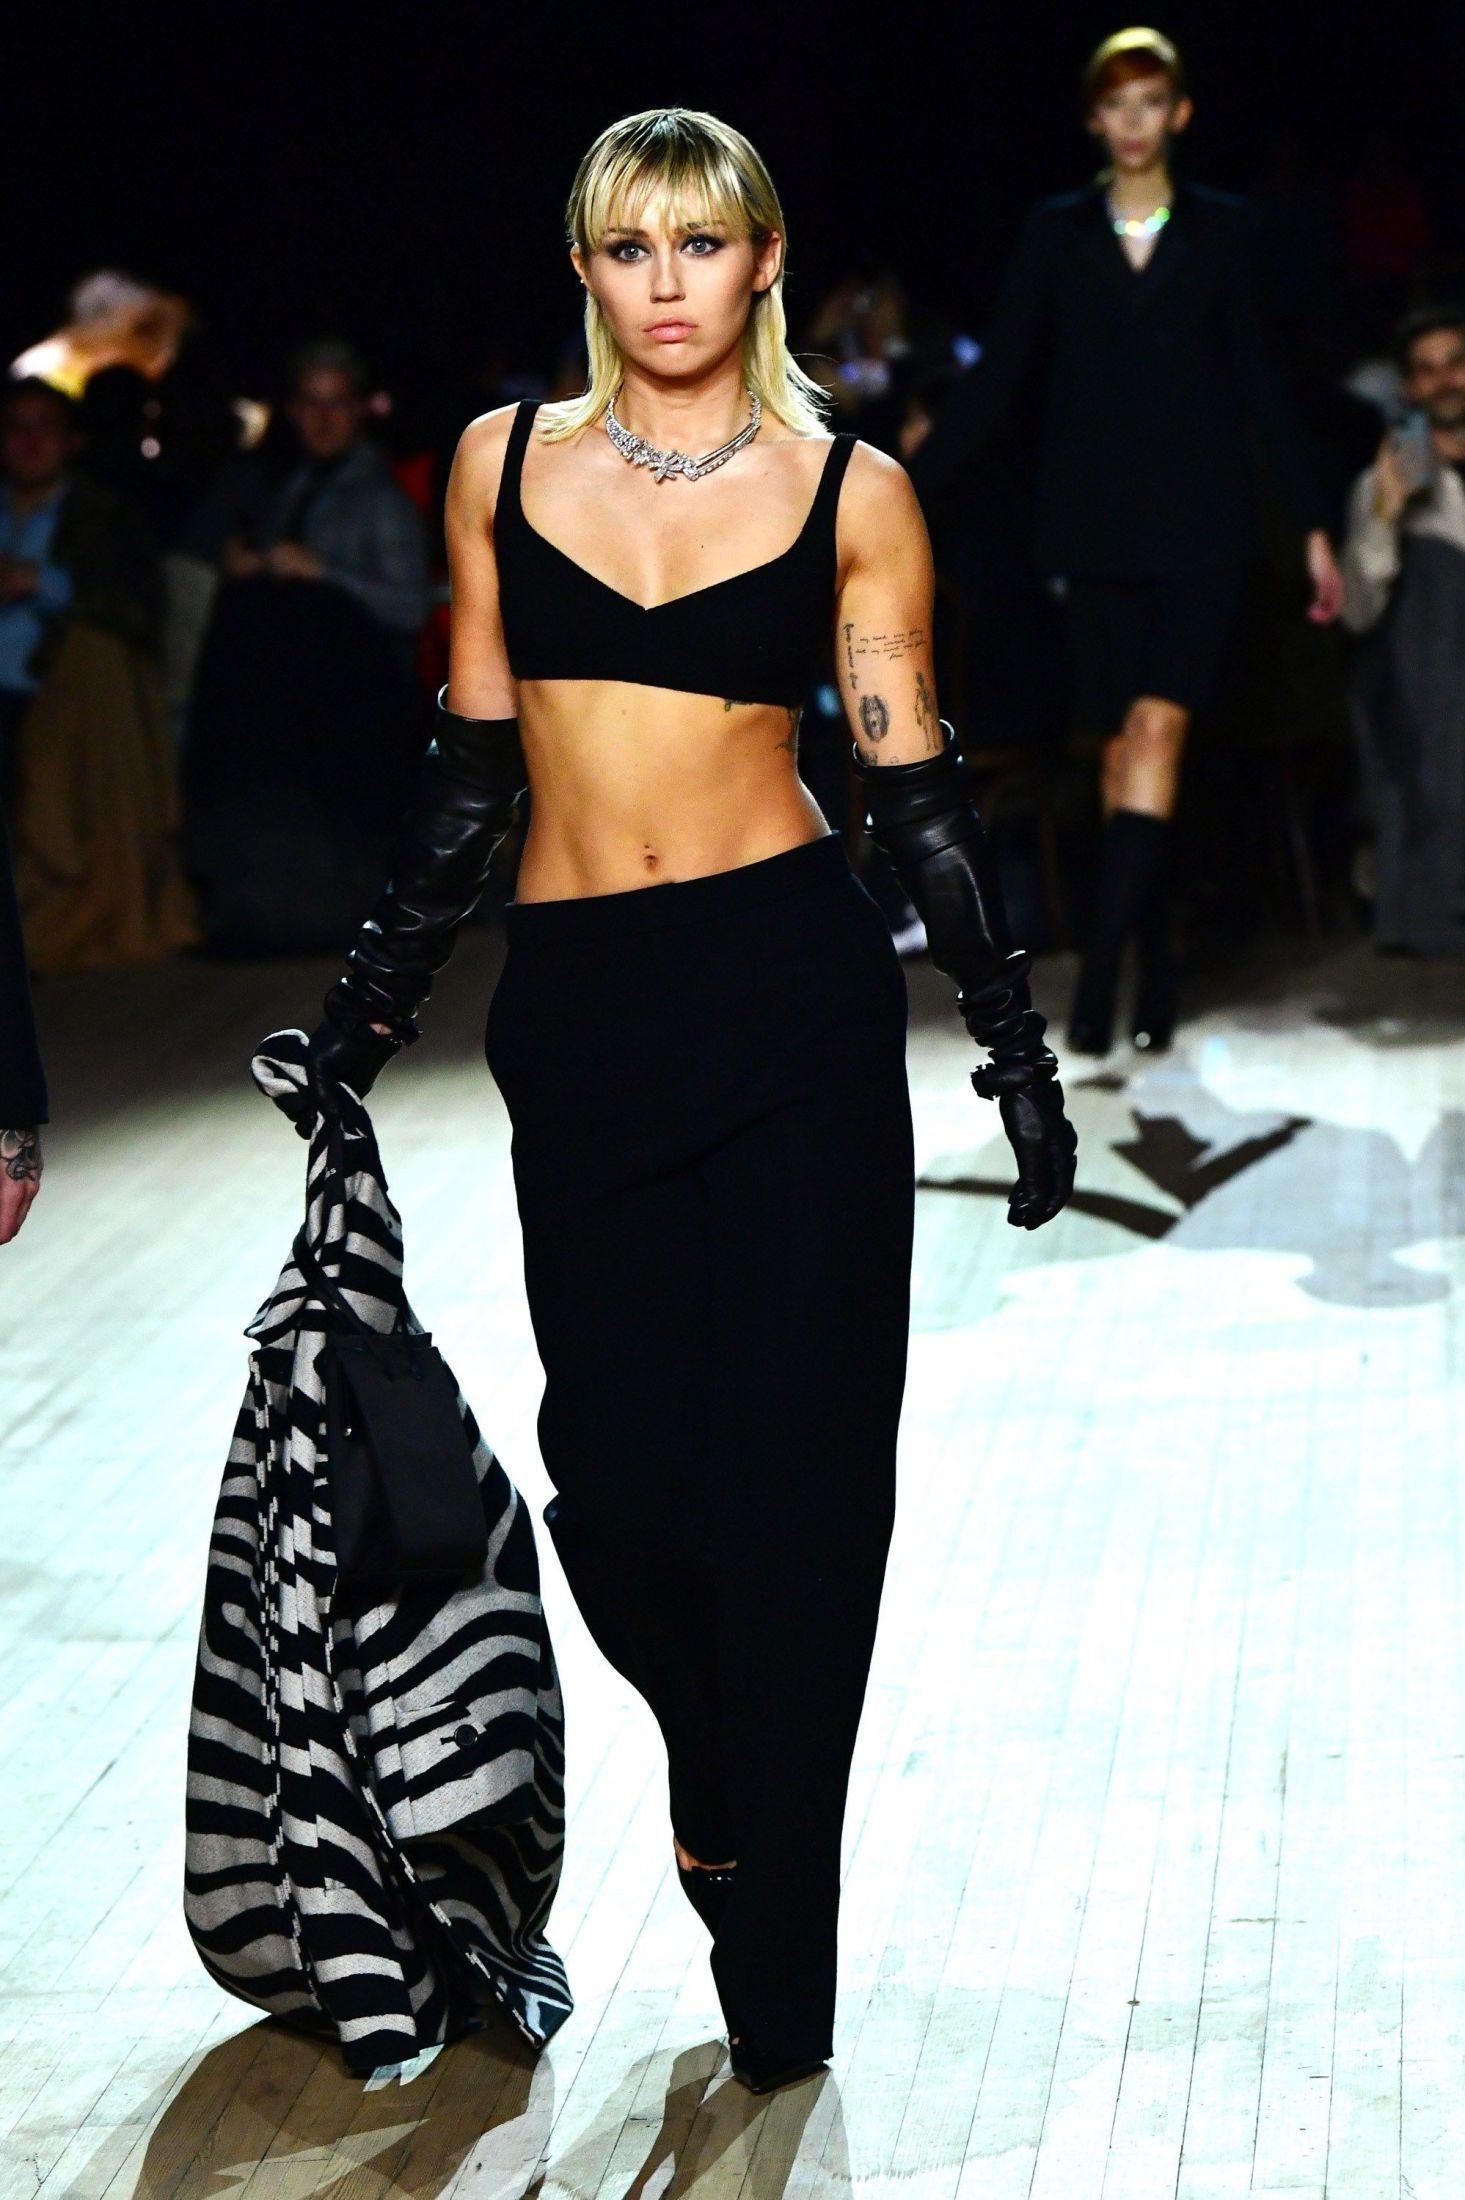 I FARTA: Her går Miley Cyrus på catwalken. Hun var kledd i svarte bukser og svart BH-topp. I hånden holdt hun en zebramønstret blazer. Foto: Slaven Vlasic/Getty Images for Marc Jacobs/AFP.